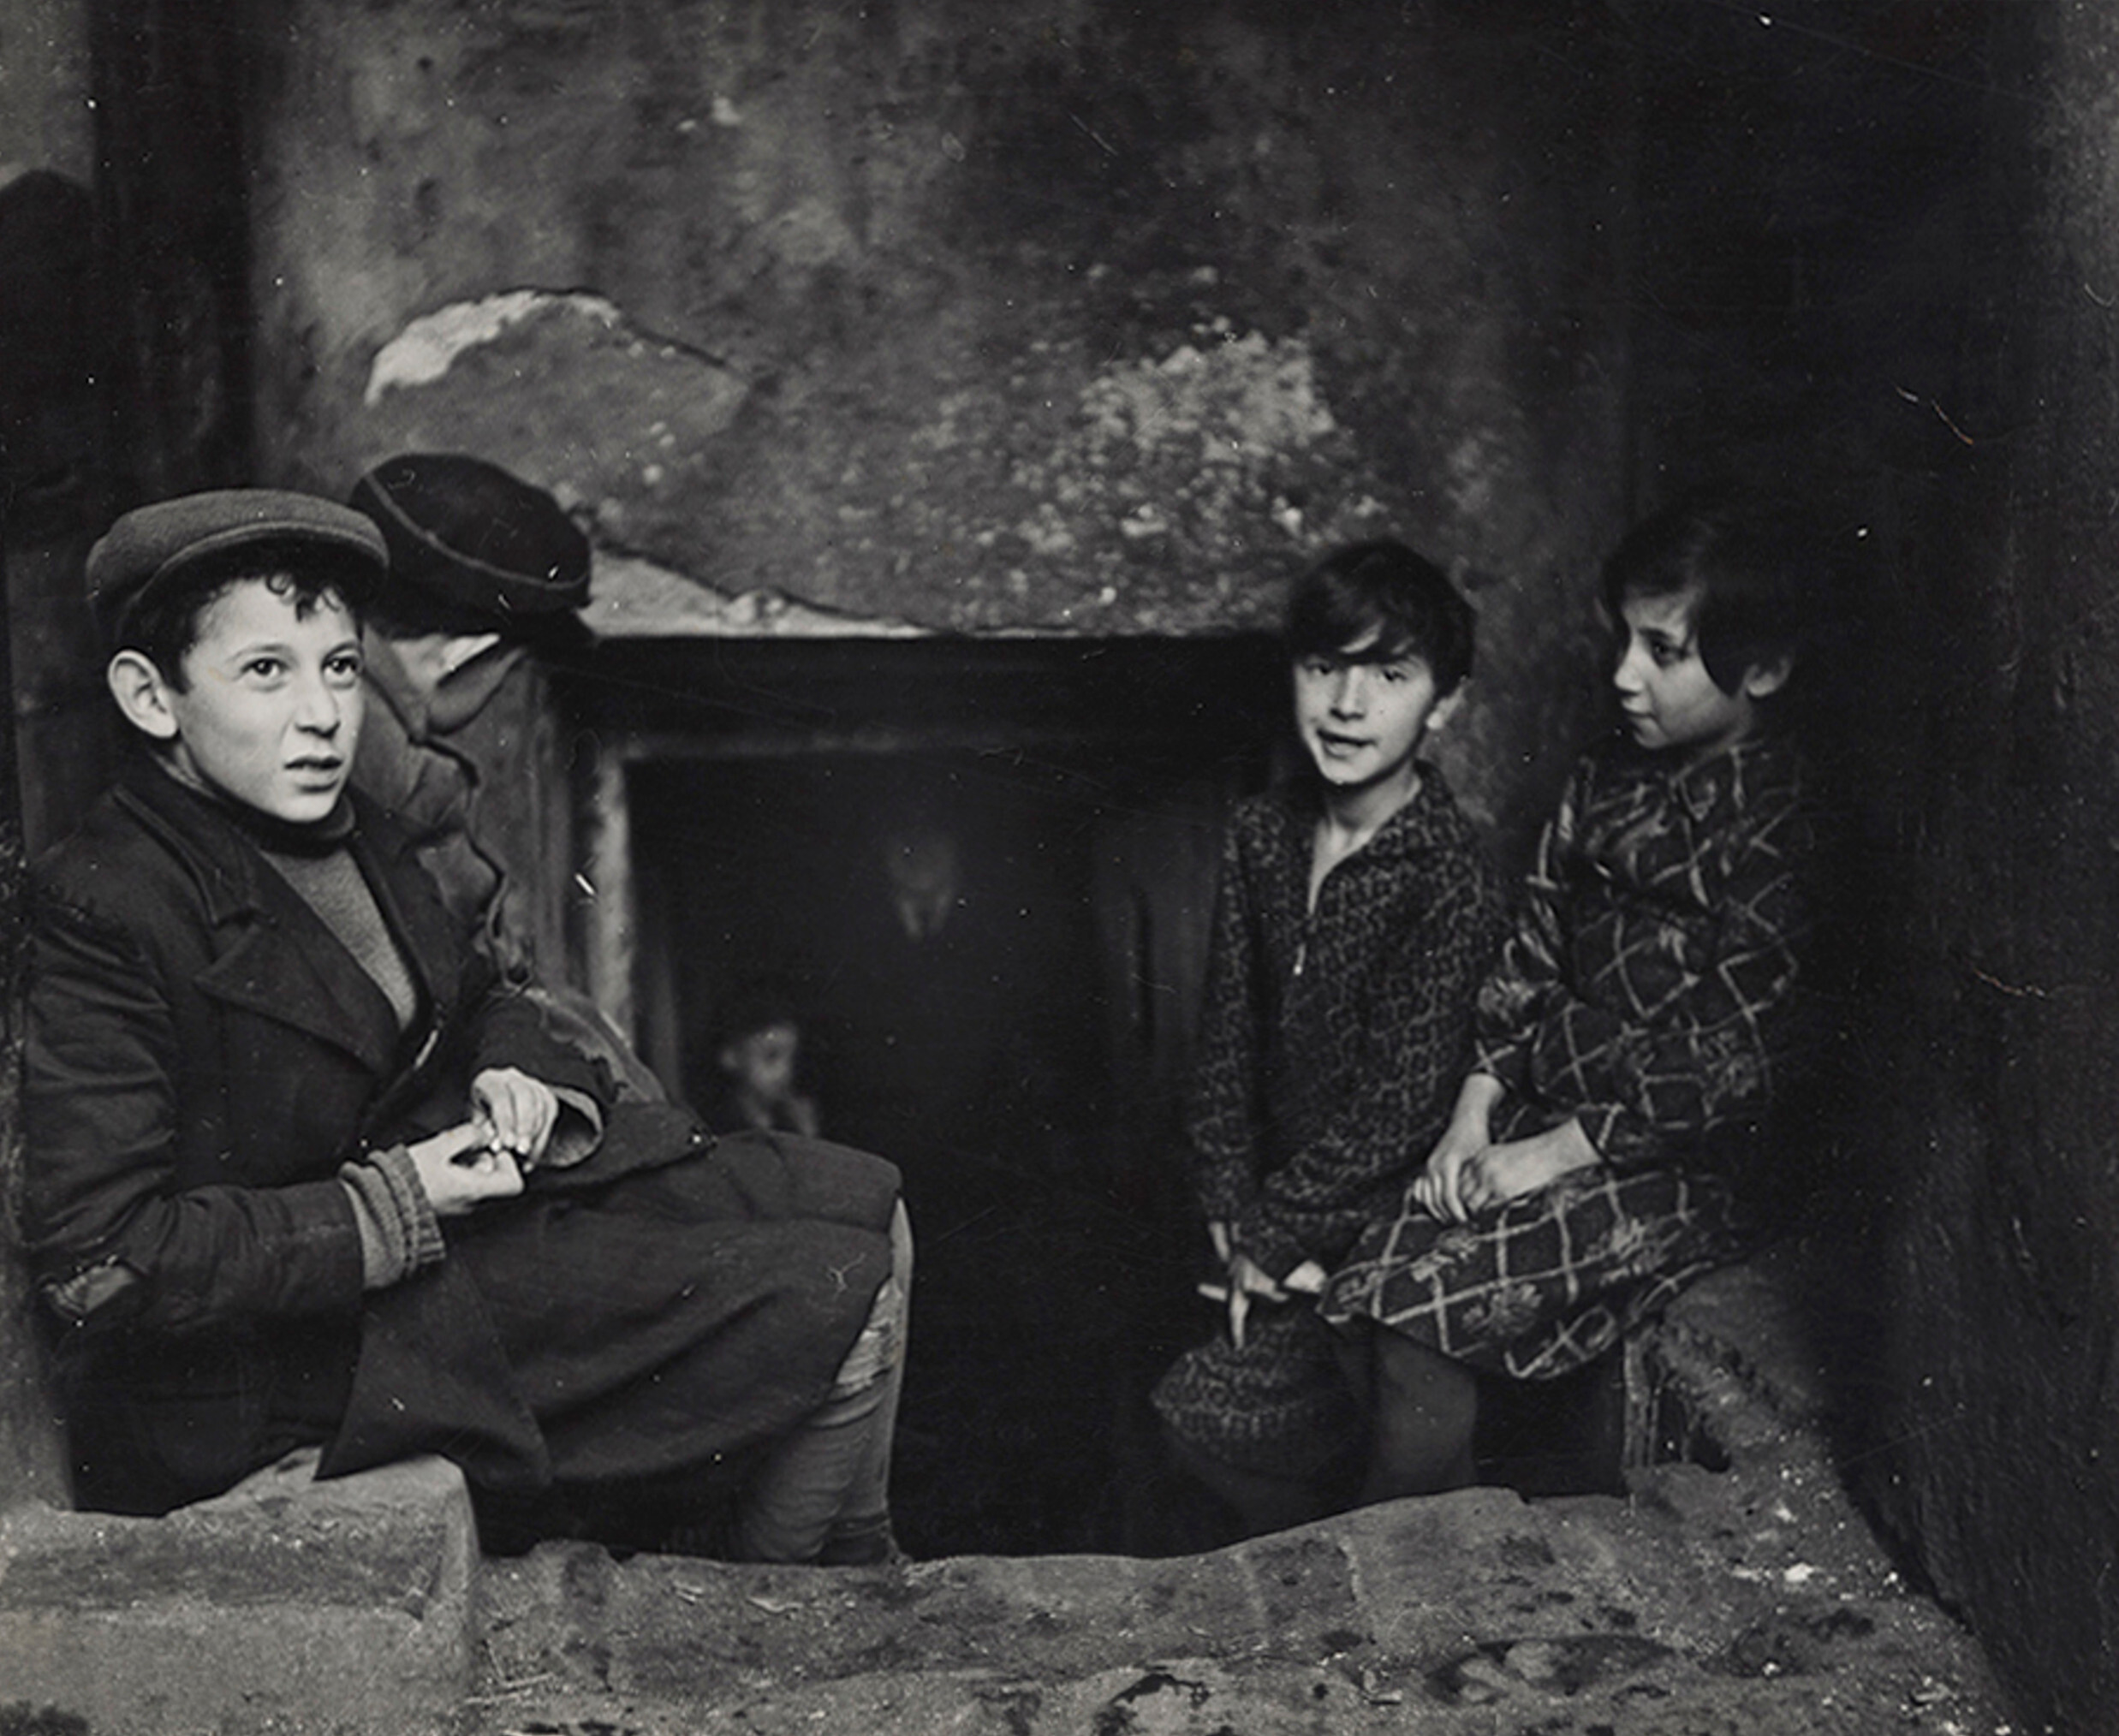 Дети ищут свет и воздух возле своего подвального дома, улица Крохмальная, Варшава., ок. 1935-38 г. Фотограф Роман Вишняк